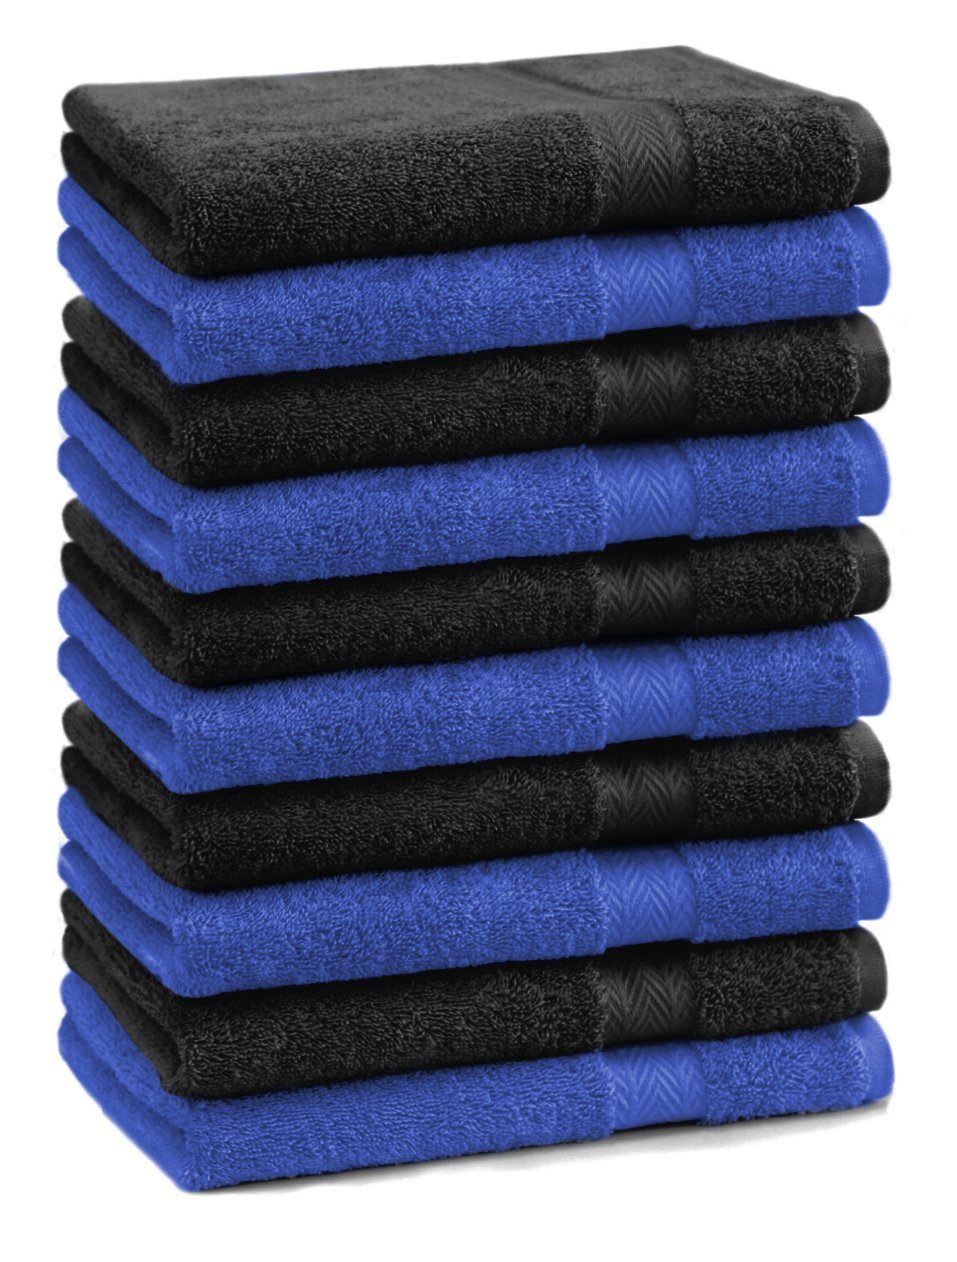 Betz Gästehandtücher 10 Stück Gästehandtücher Premium 100% Baumwolle Gästetuch-Set 30x50 cm Farbe royalblau und schwarz, 100% Baumwolle